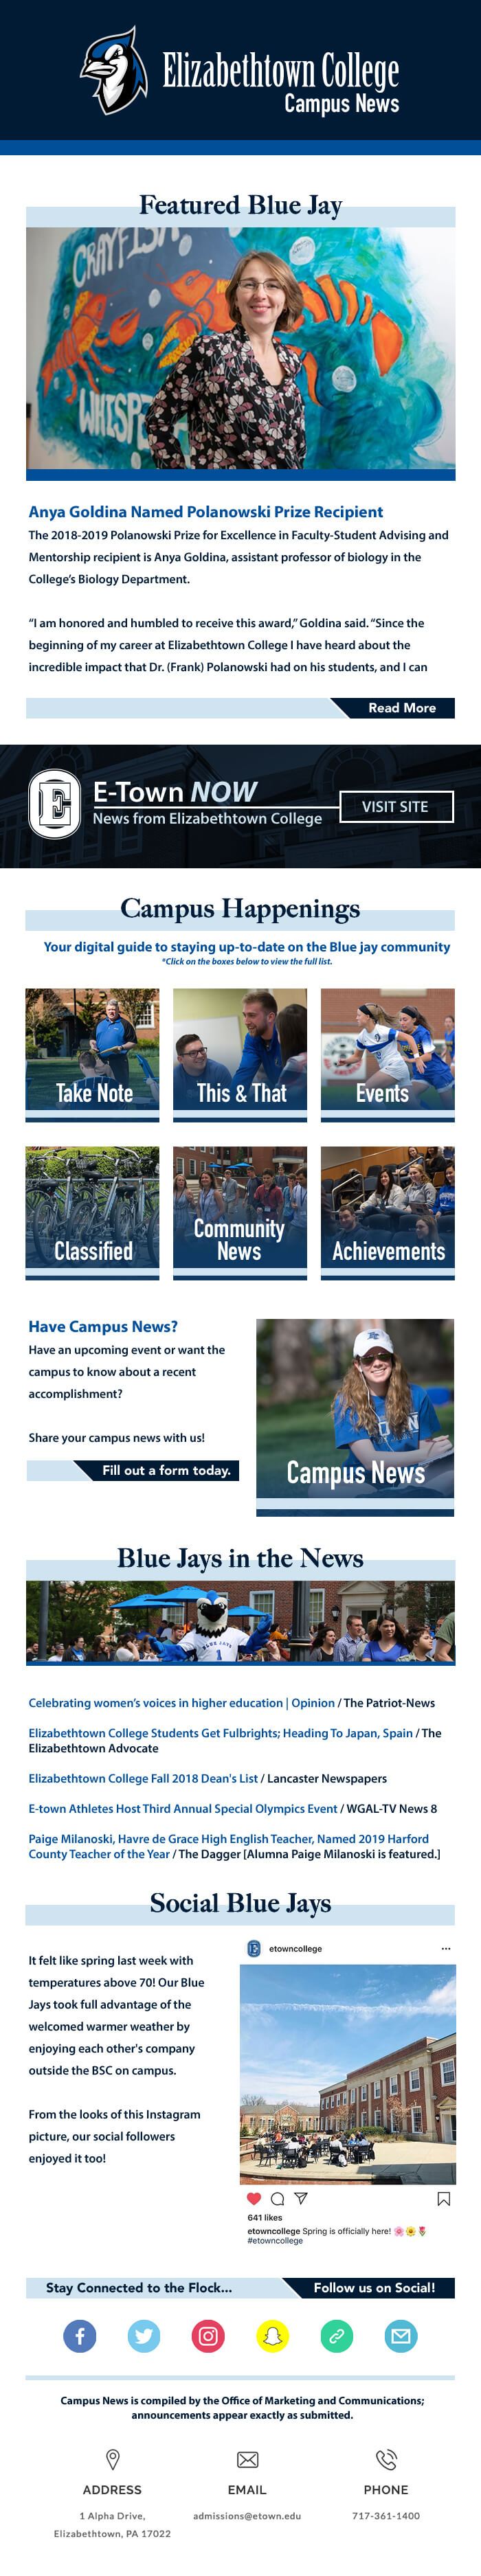 Elizabethtown College Campus News